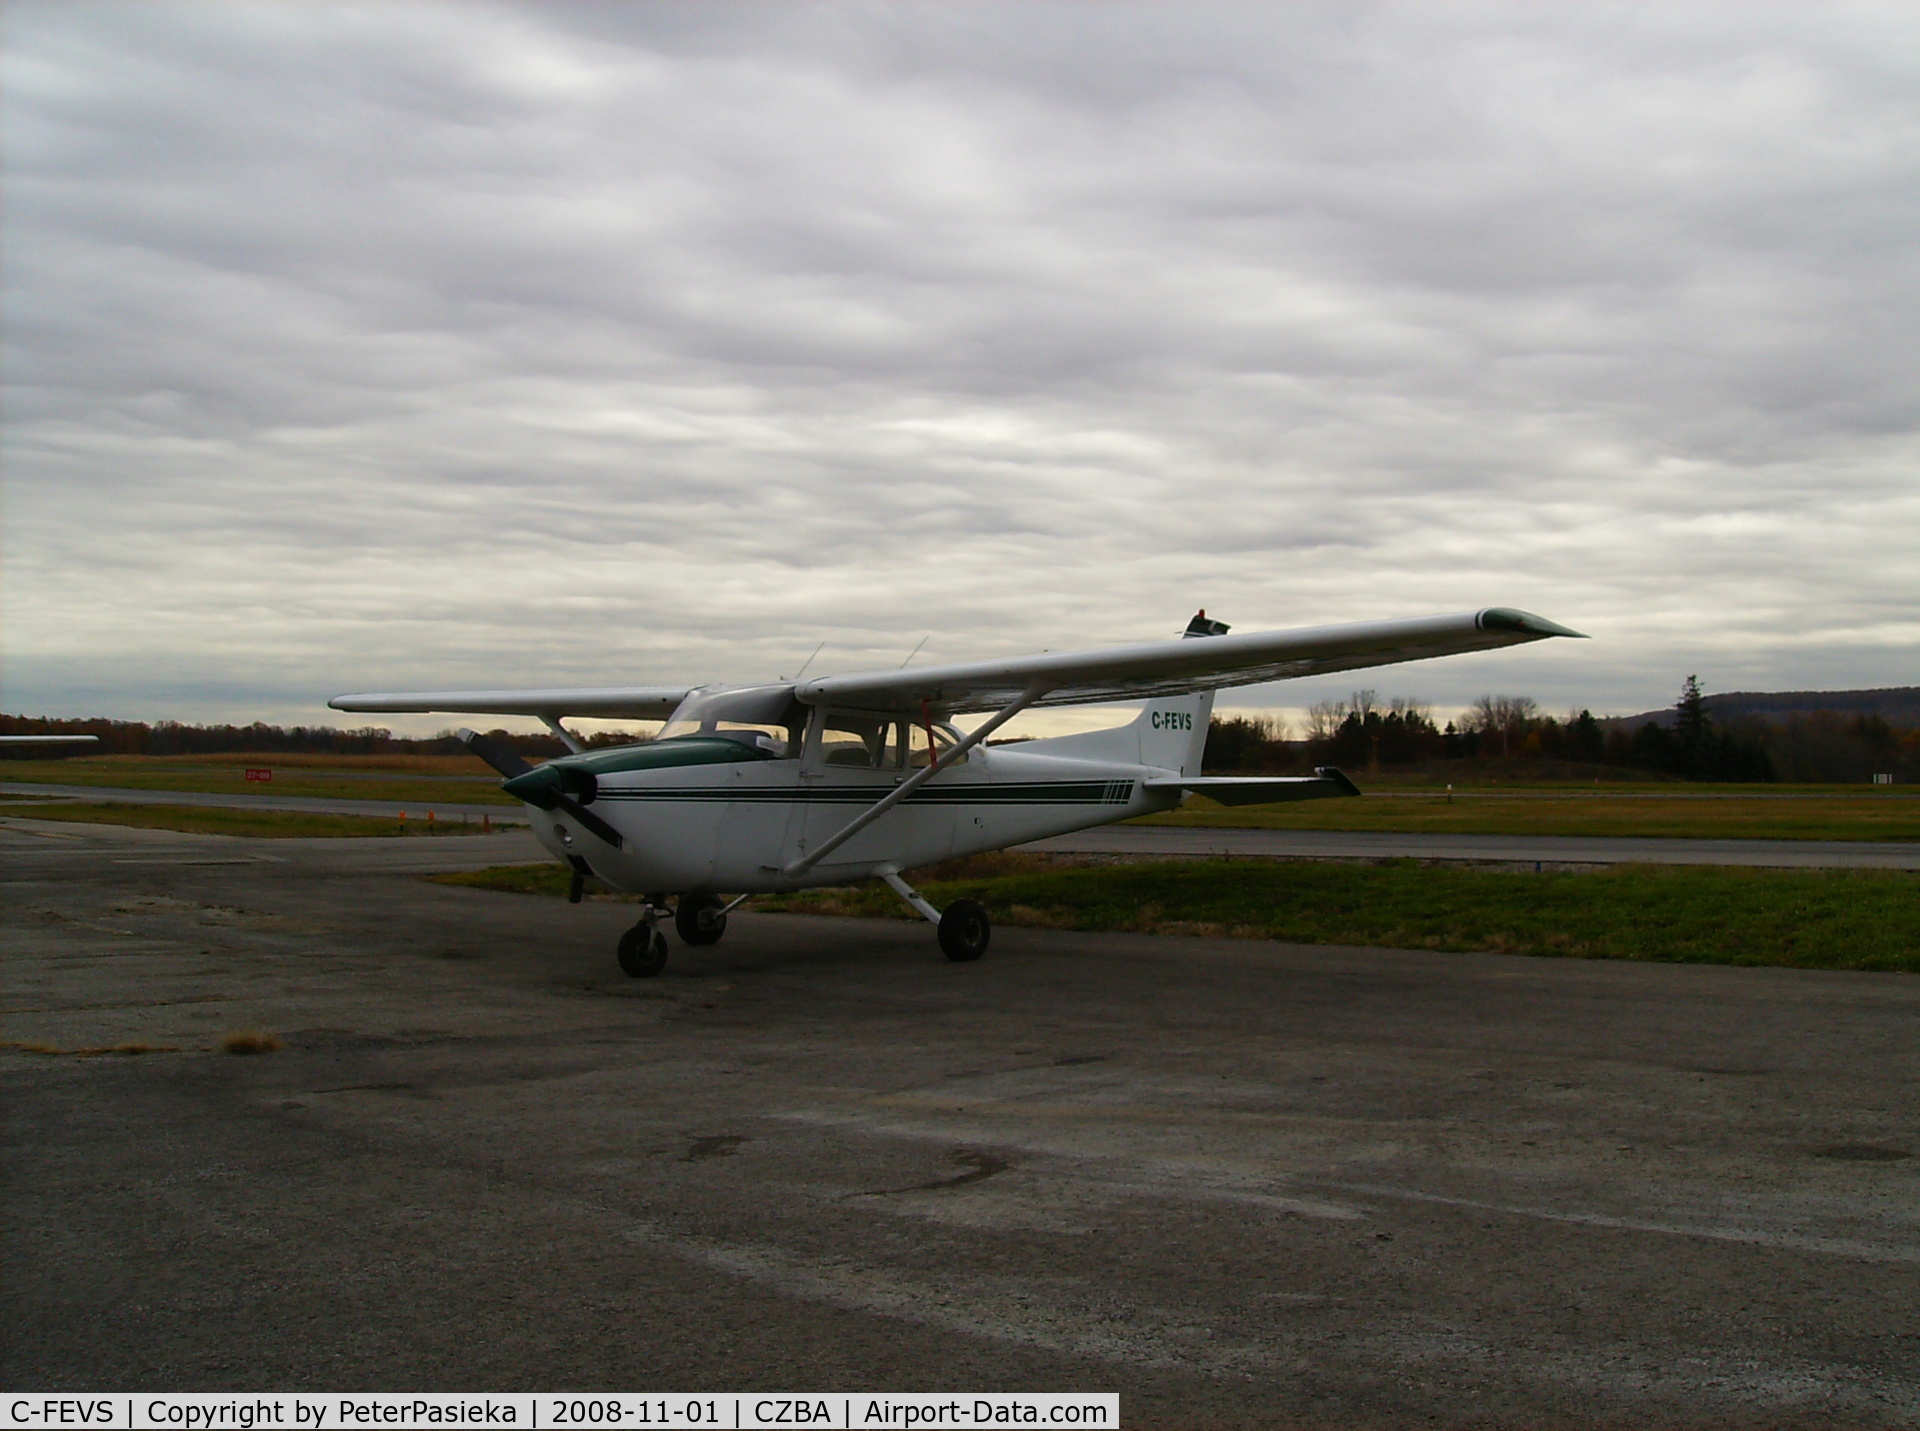 C-FEVS, 1974 Cessna 172M C/N 17262869, Spectrum Airways training aircraft, Burlington Airport, Ontario Canada